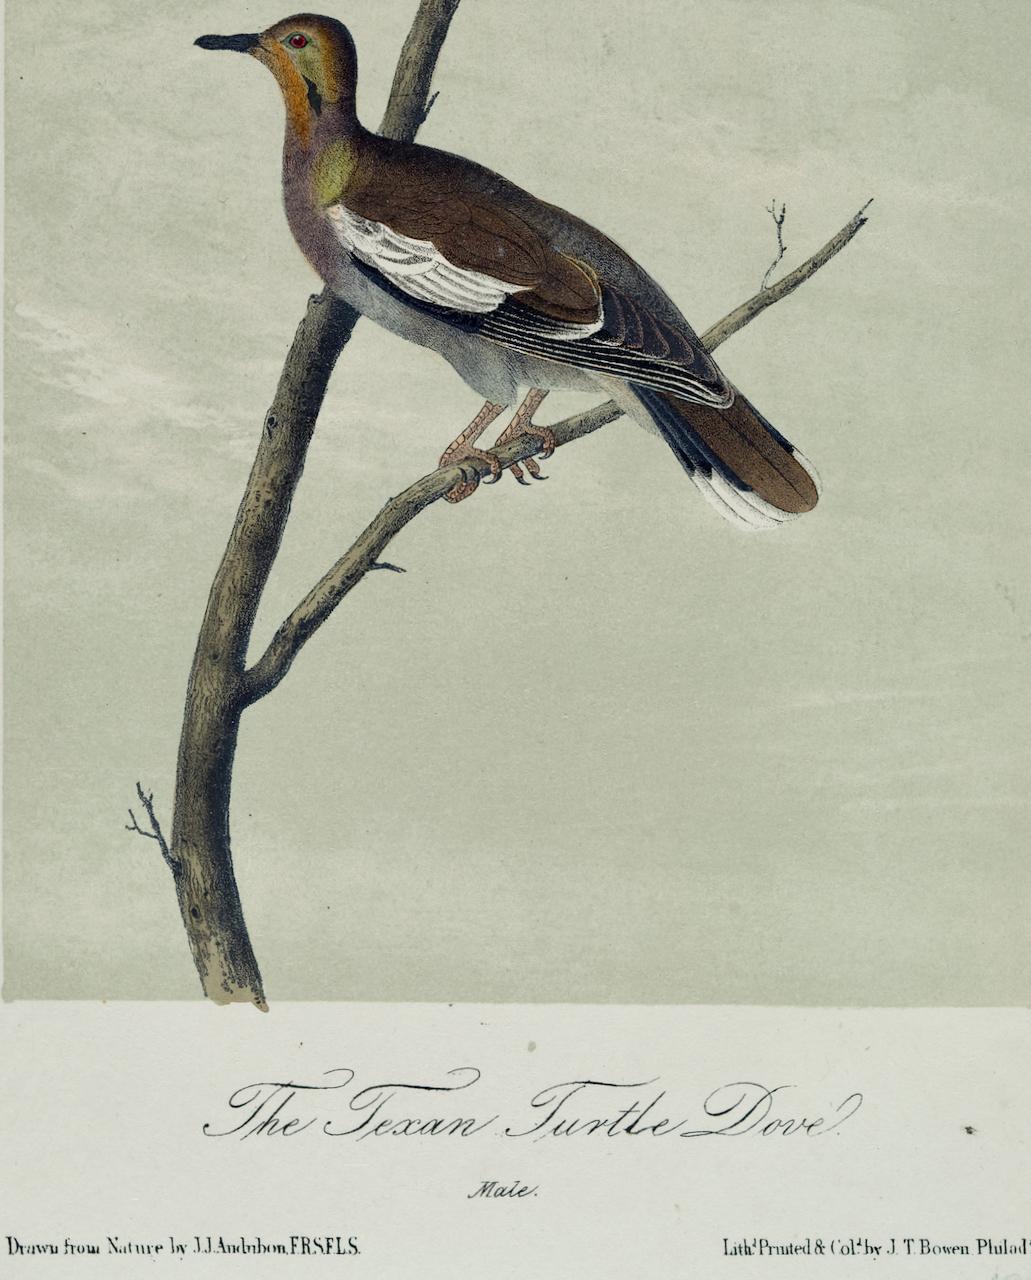 Il s'agit d'une lithographie originale du 19ème siècle de John James Audubon, colorée à la main, intitulée 